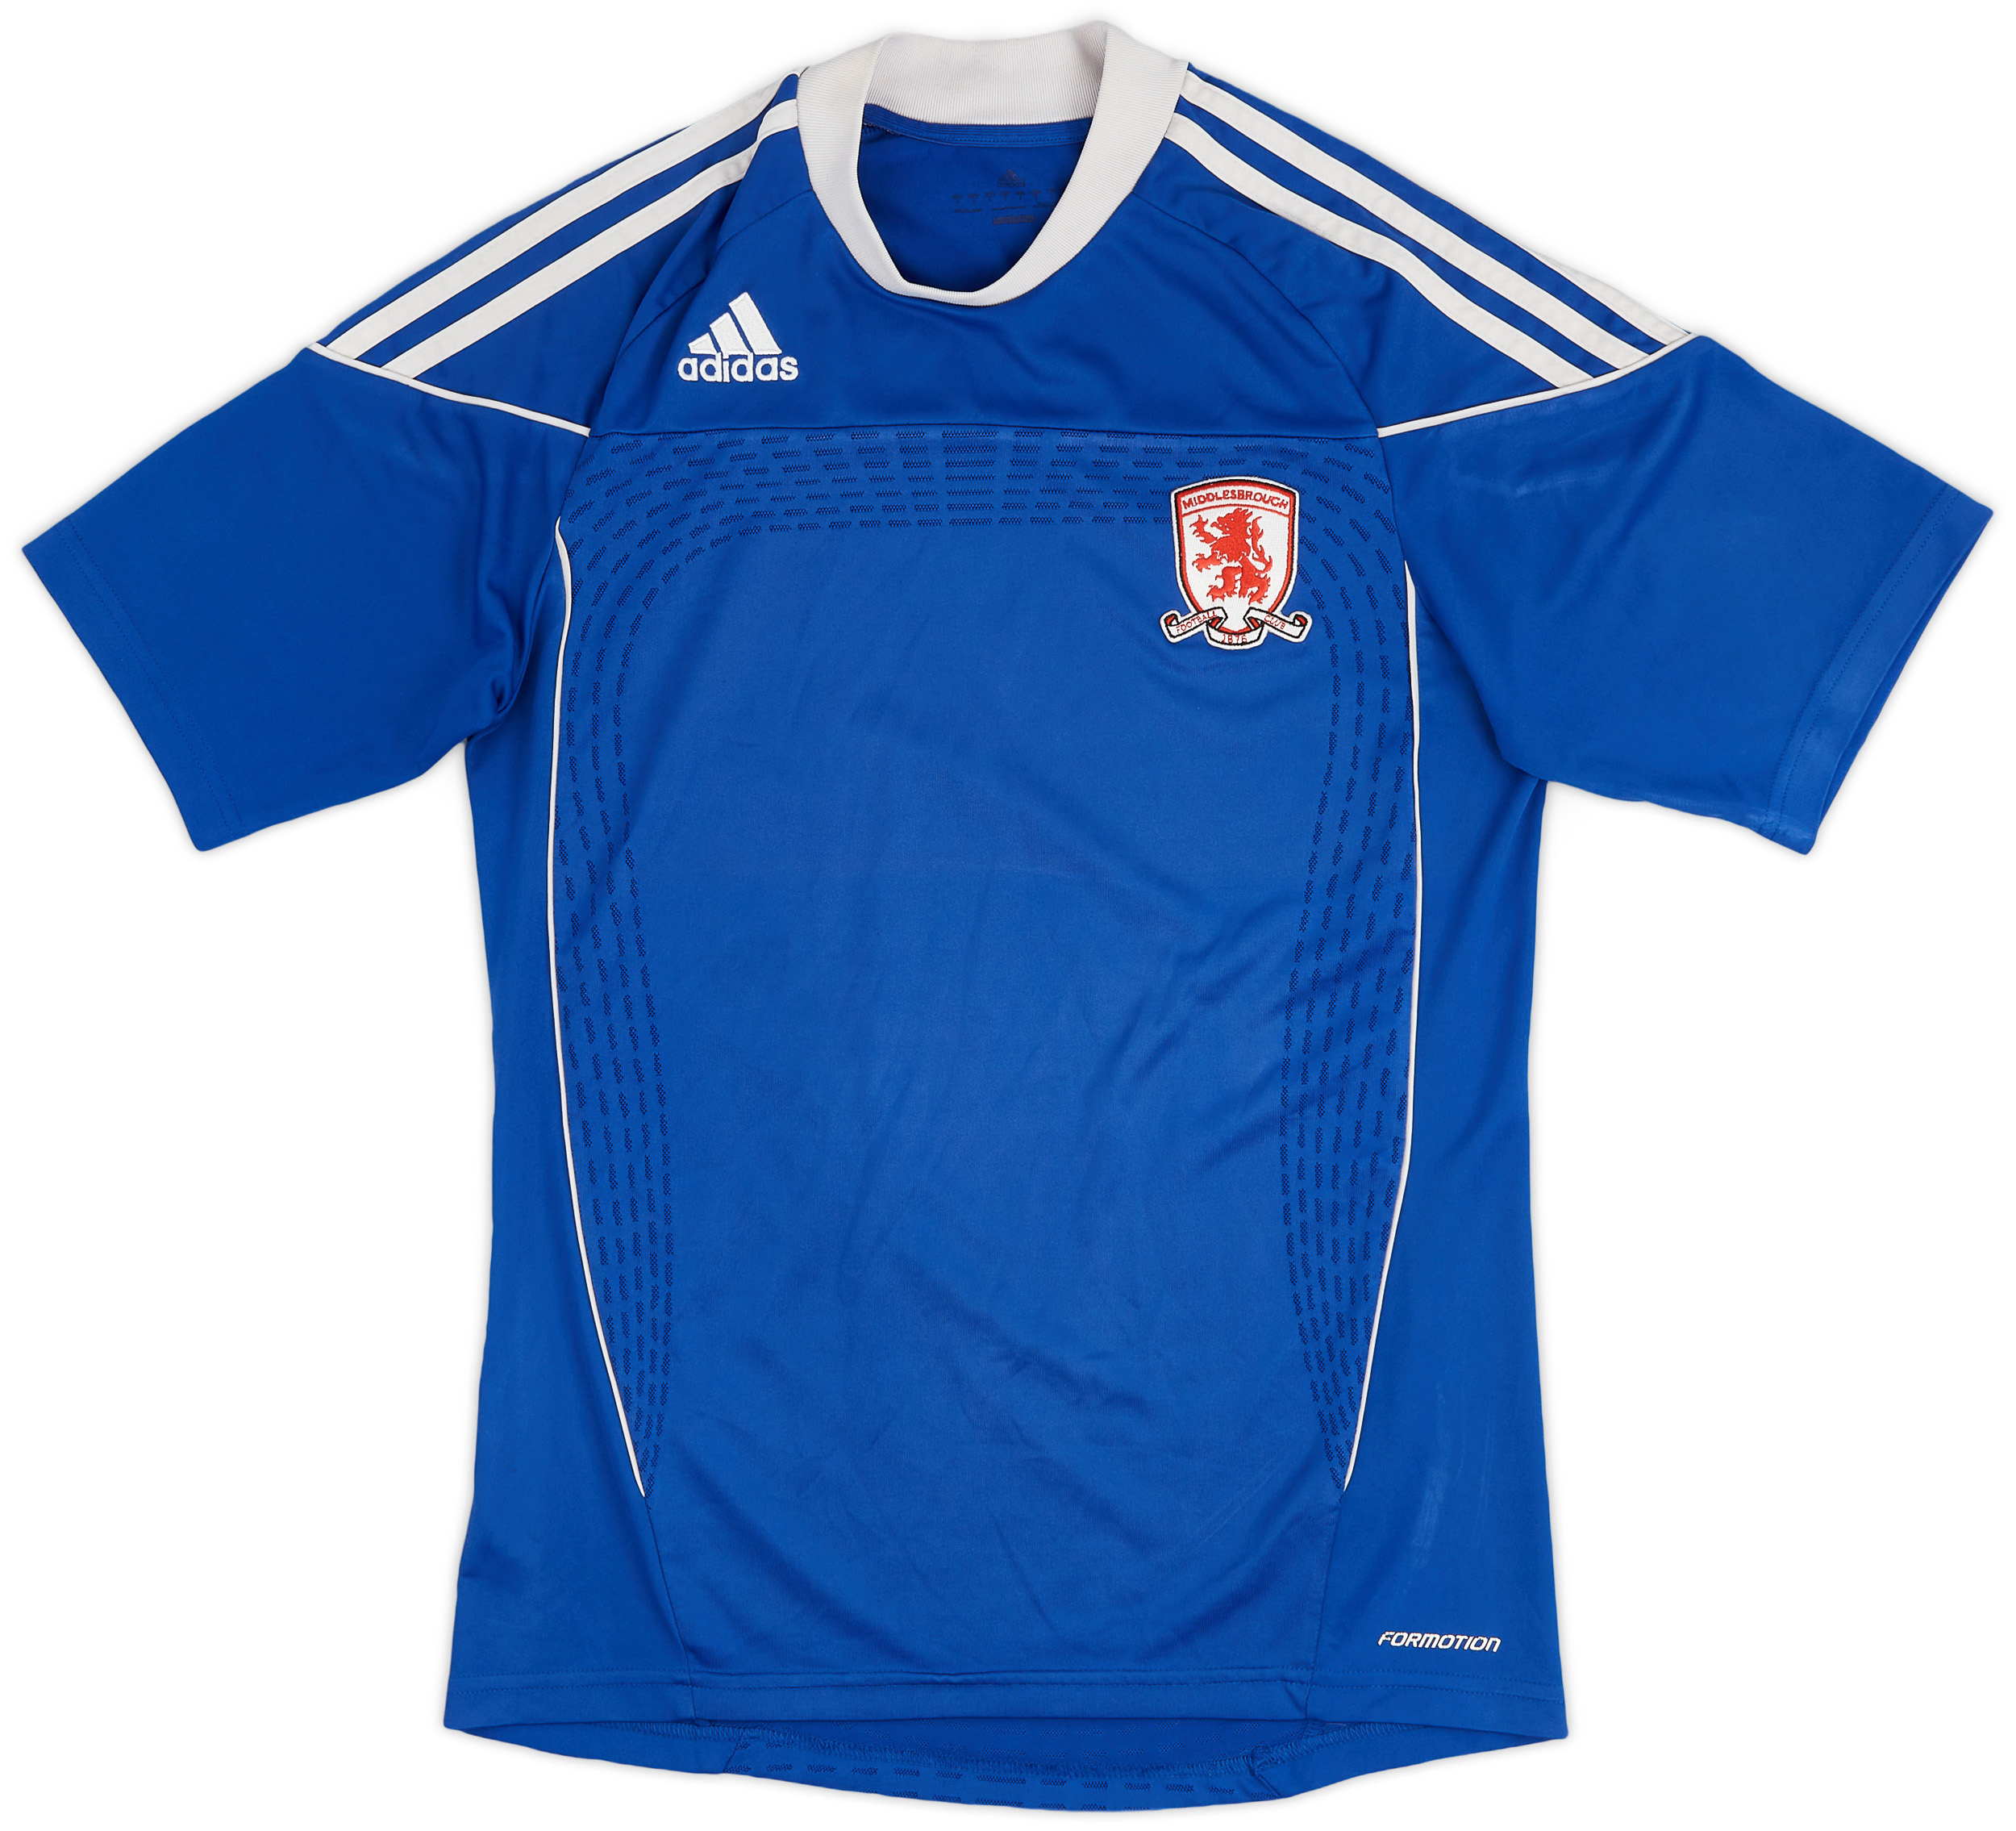 Middlesbrough  Away shirt (Original)